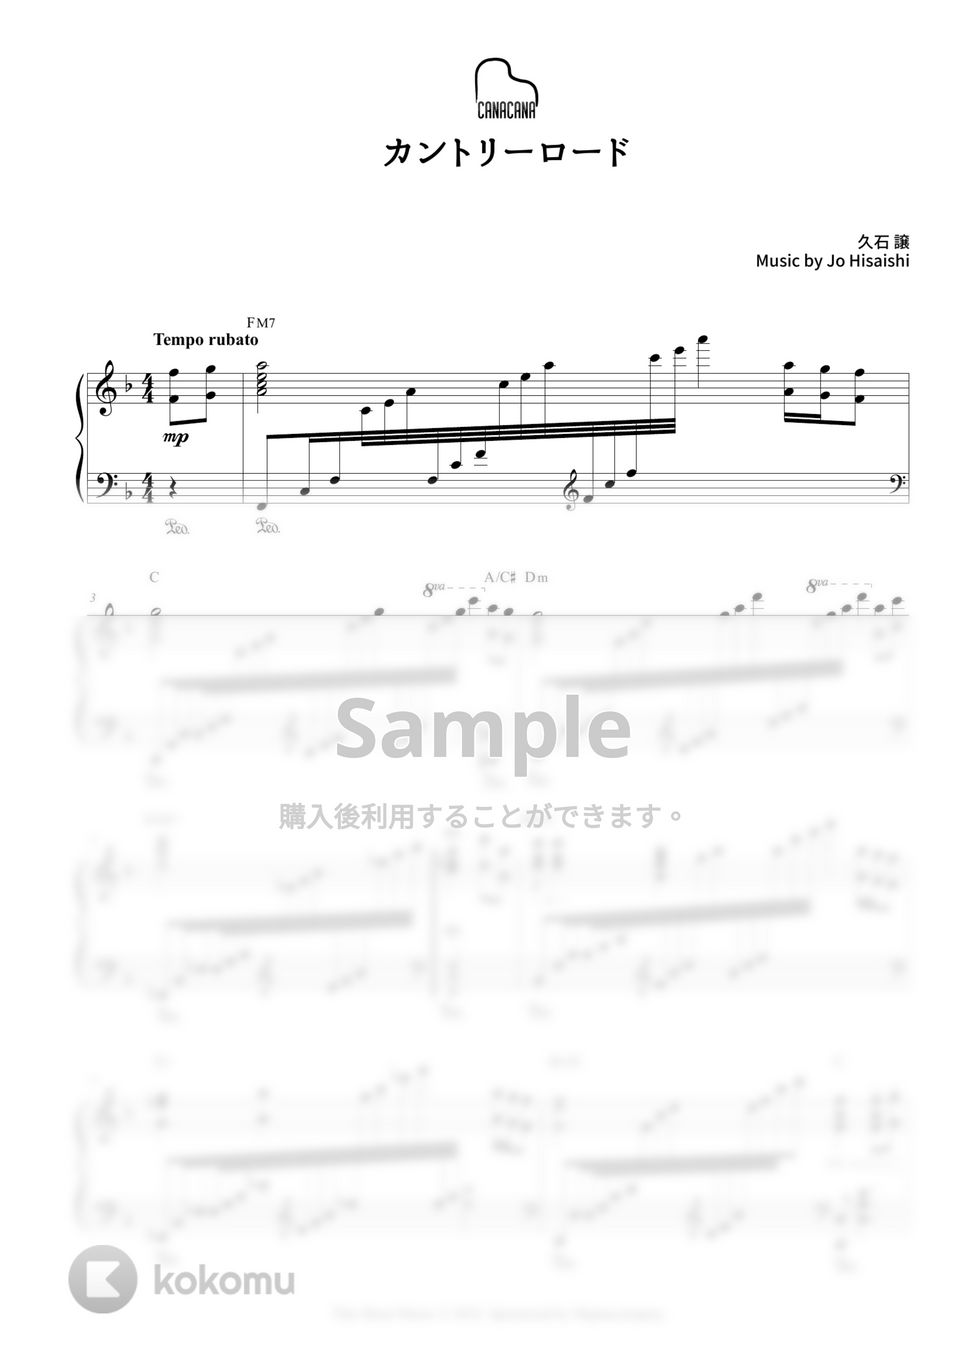 久石譲 - カントリーロード (耳をすませば) by CANACANA family